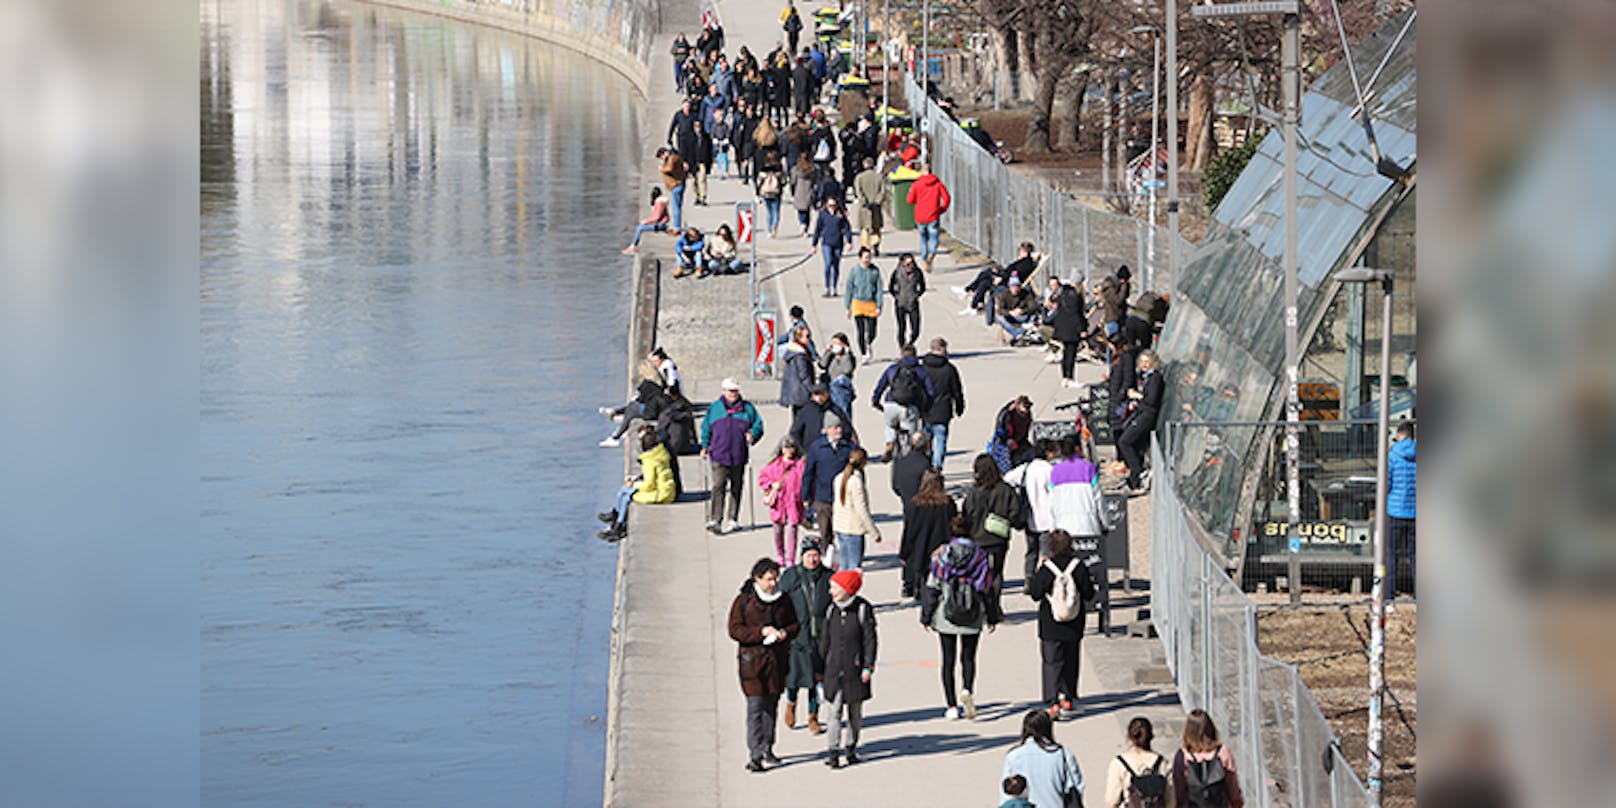 Trotz frostigen Temperaturen tummelten sich die Menschen am Donaukanal